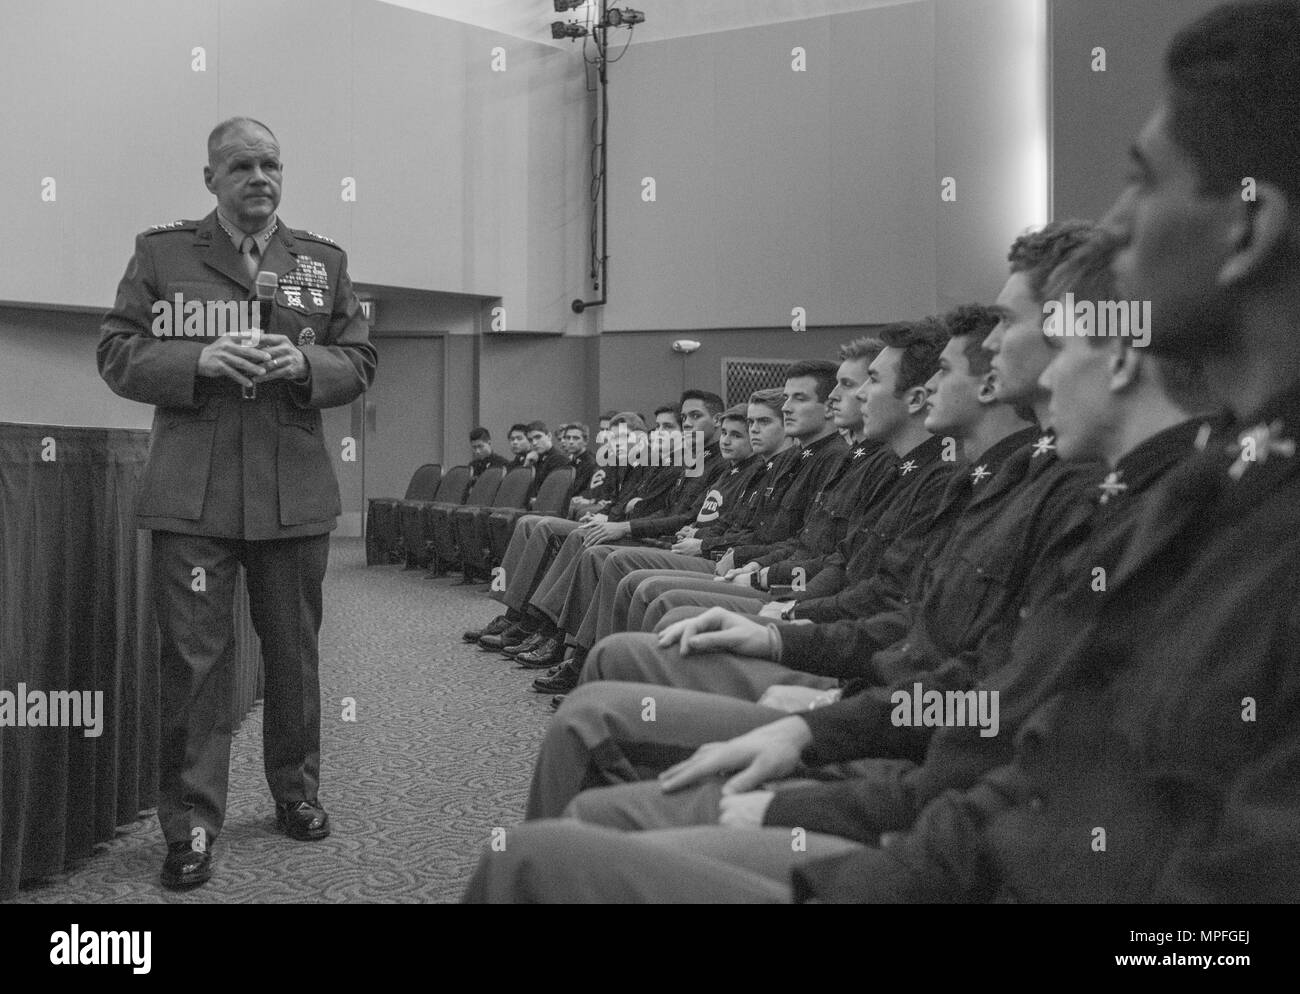 Commandant de la Marine Corps le général Robert B. Neller parle avec des étudiants à l'Culver Academies, Culver, Ind., 24 février 2017. Neller a parlé des attentes de leadership, et répondu aux questions du public. (U.S. Marine Corps photo par le Cpl. Samantha K. Braun) Banque D'Images